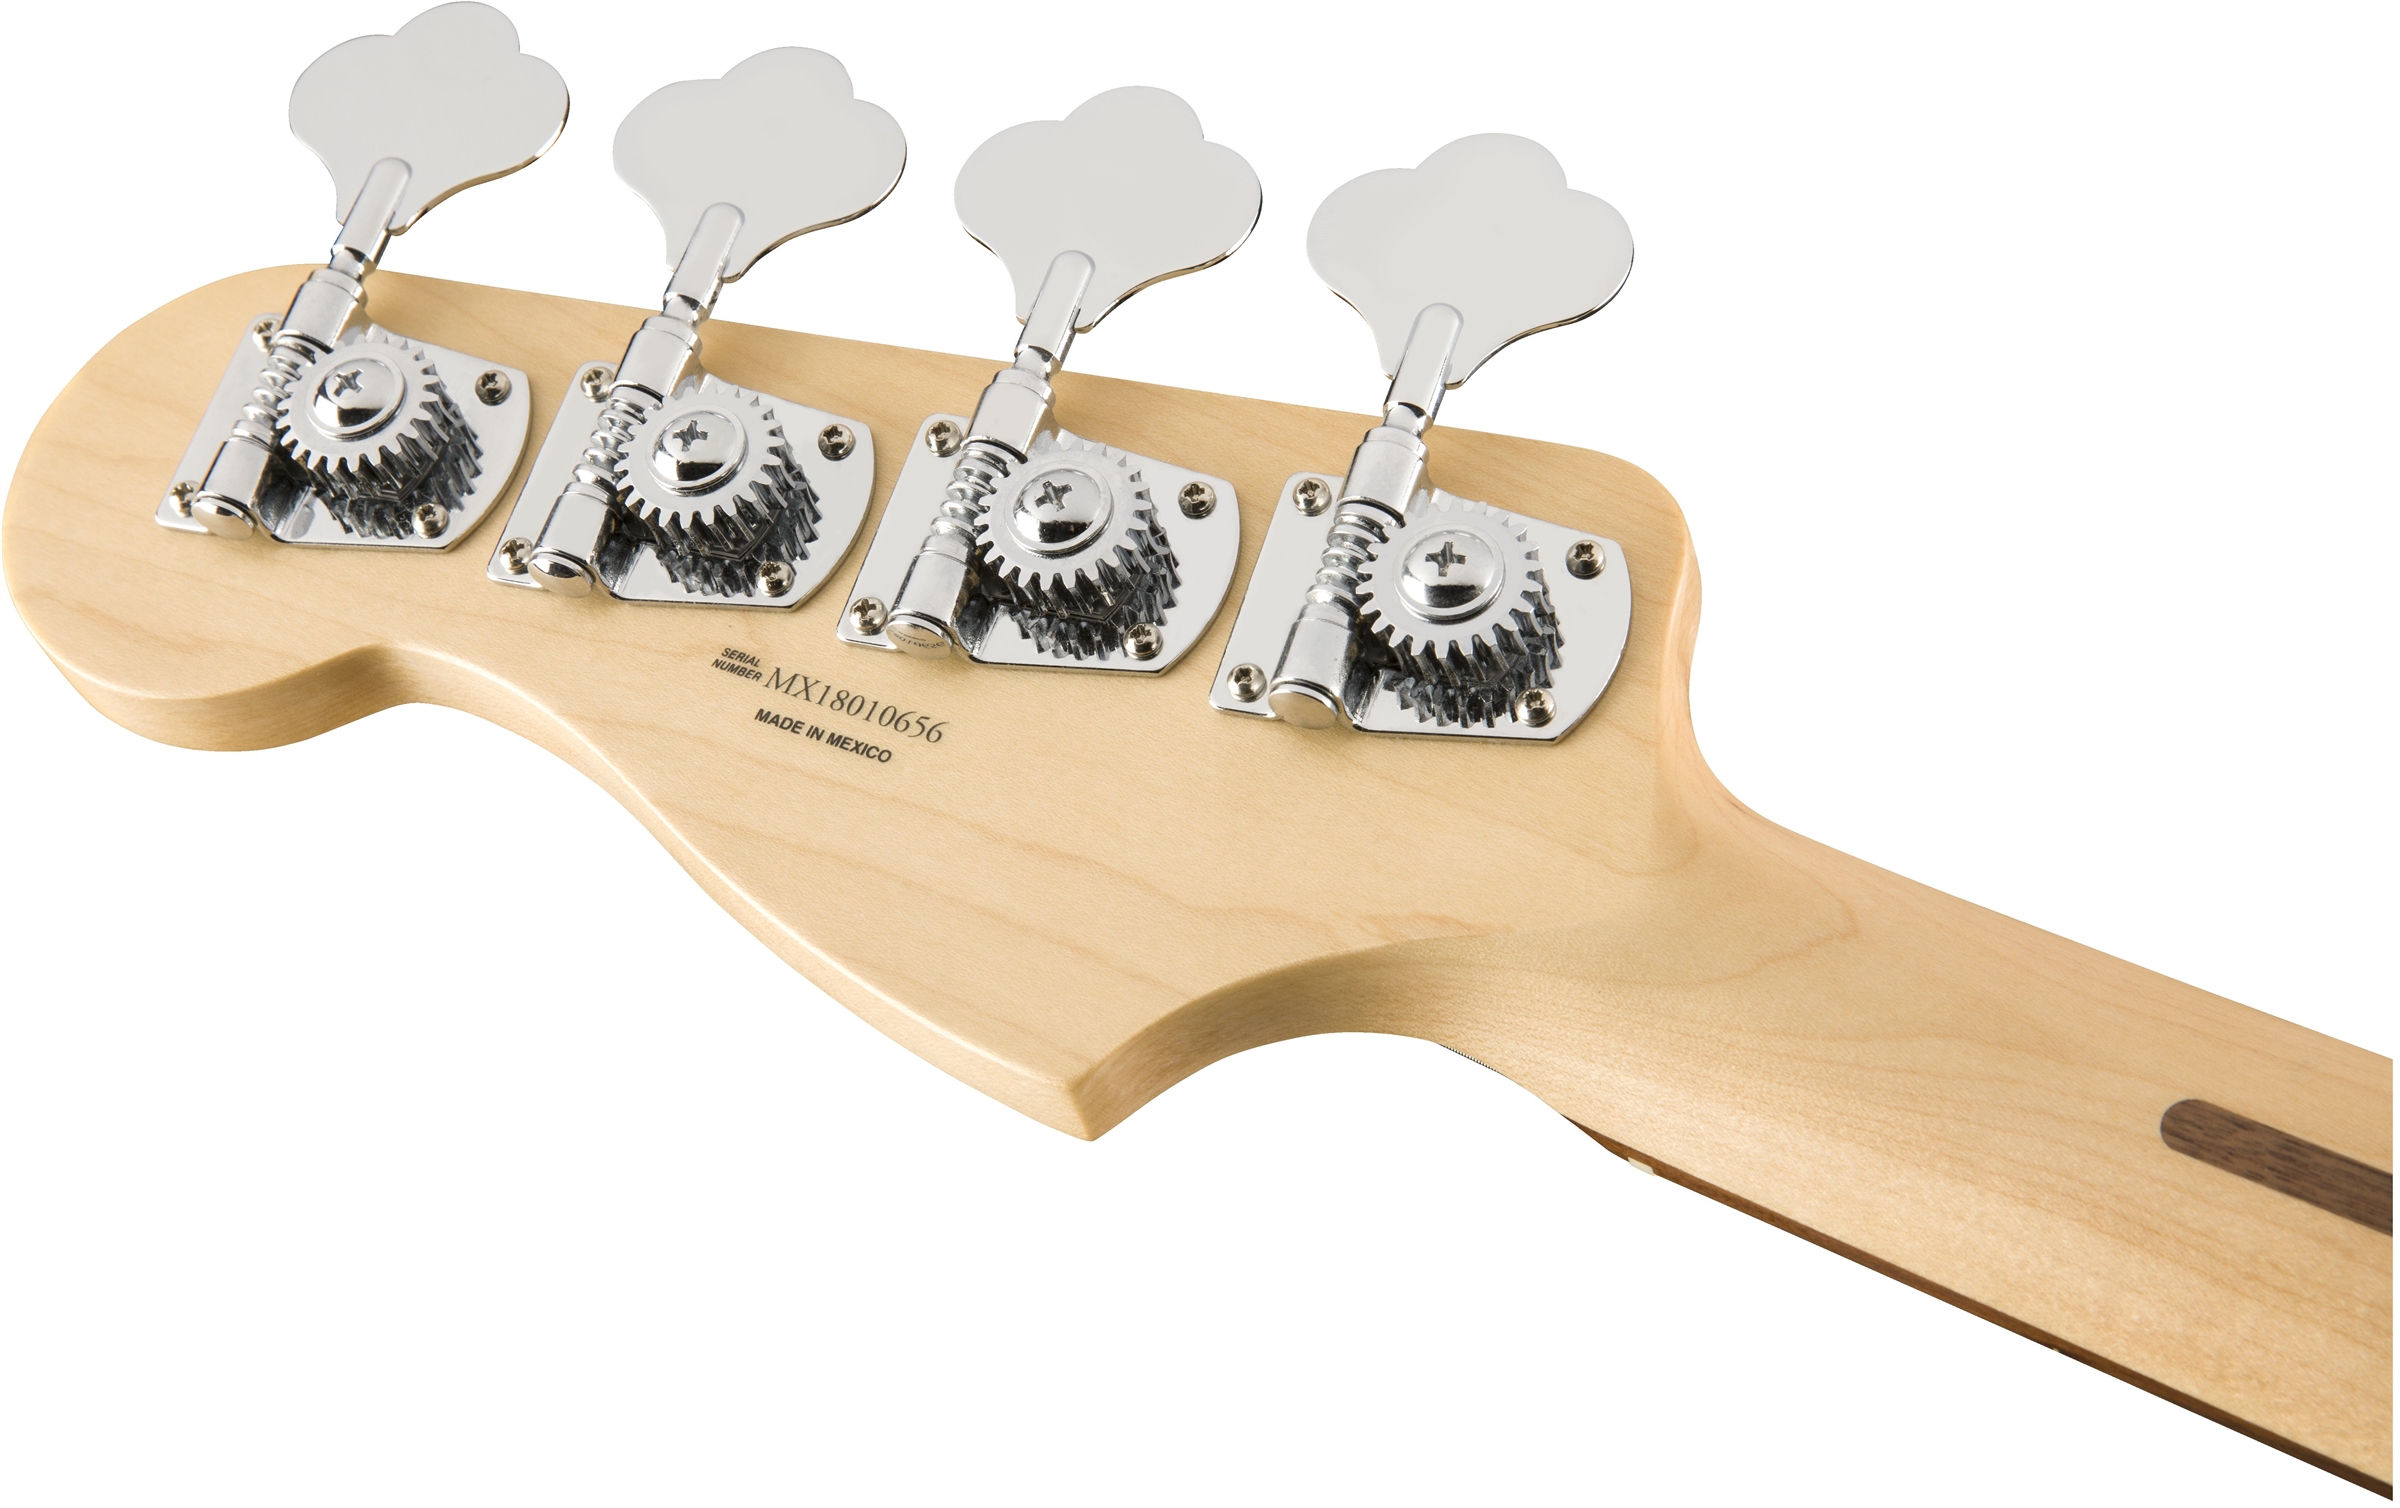 Fender Precision Bass Player Mex Pf - Sage Green Metallic - Bajo eléctrico de cuerpo sólido - Variation 5